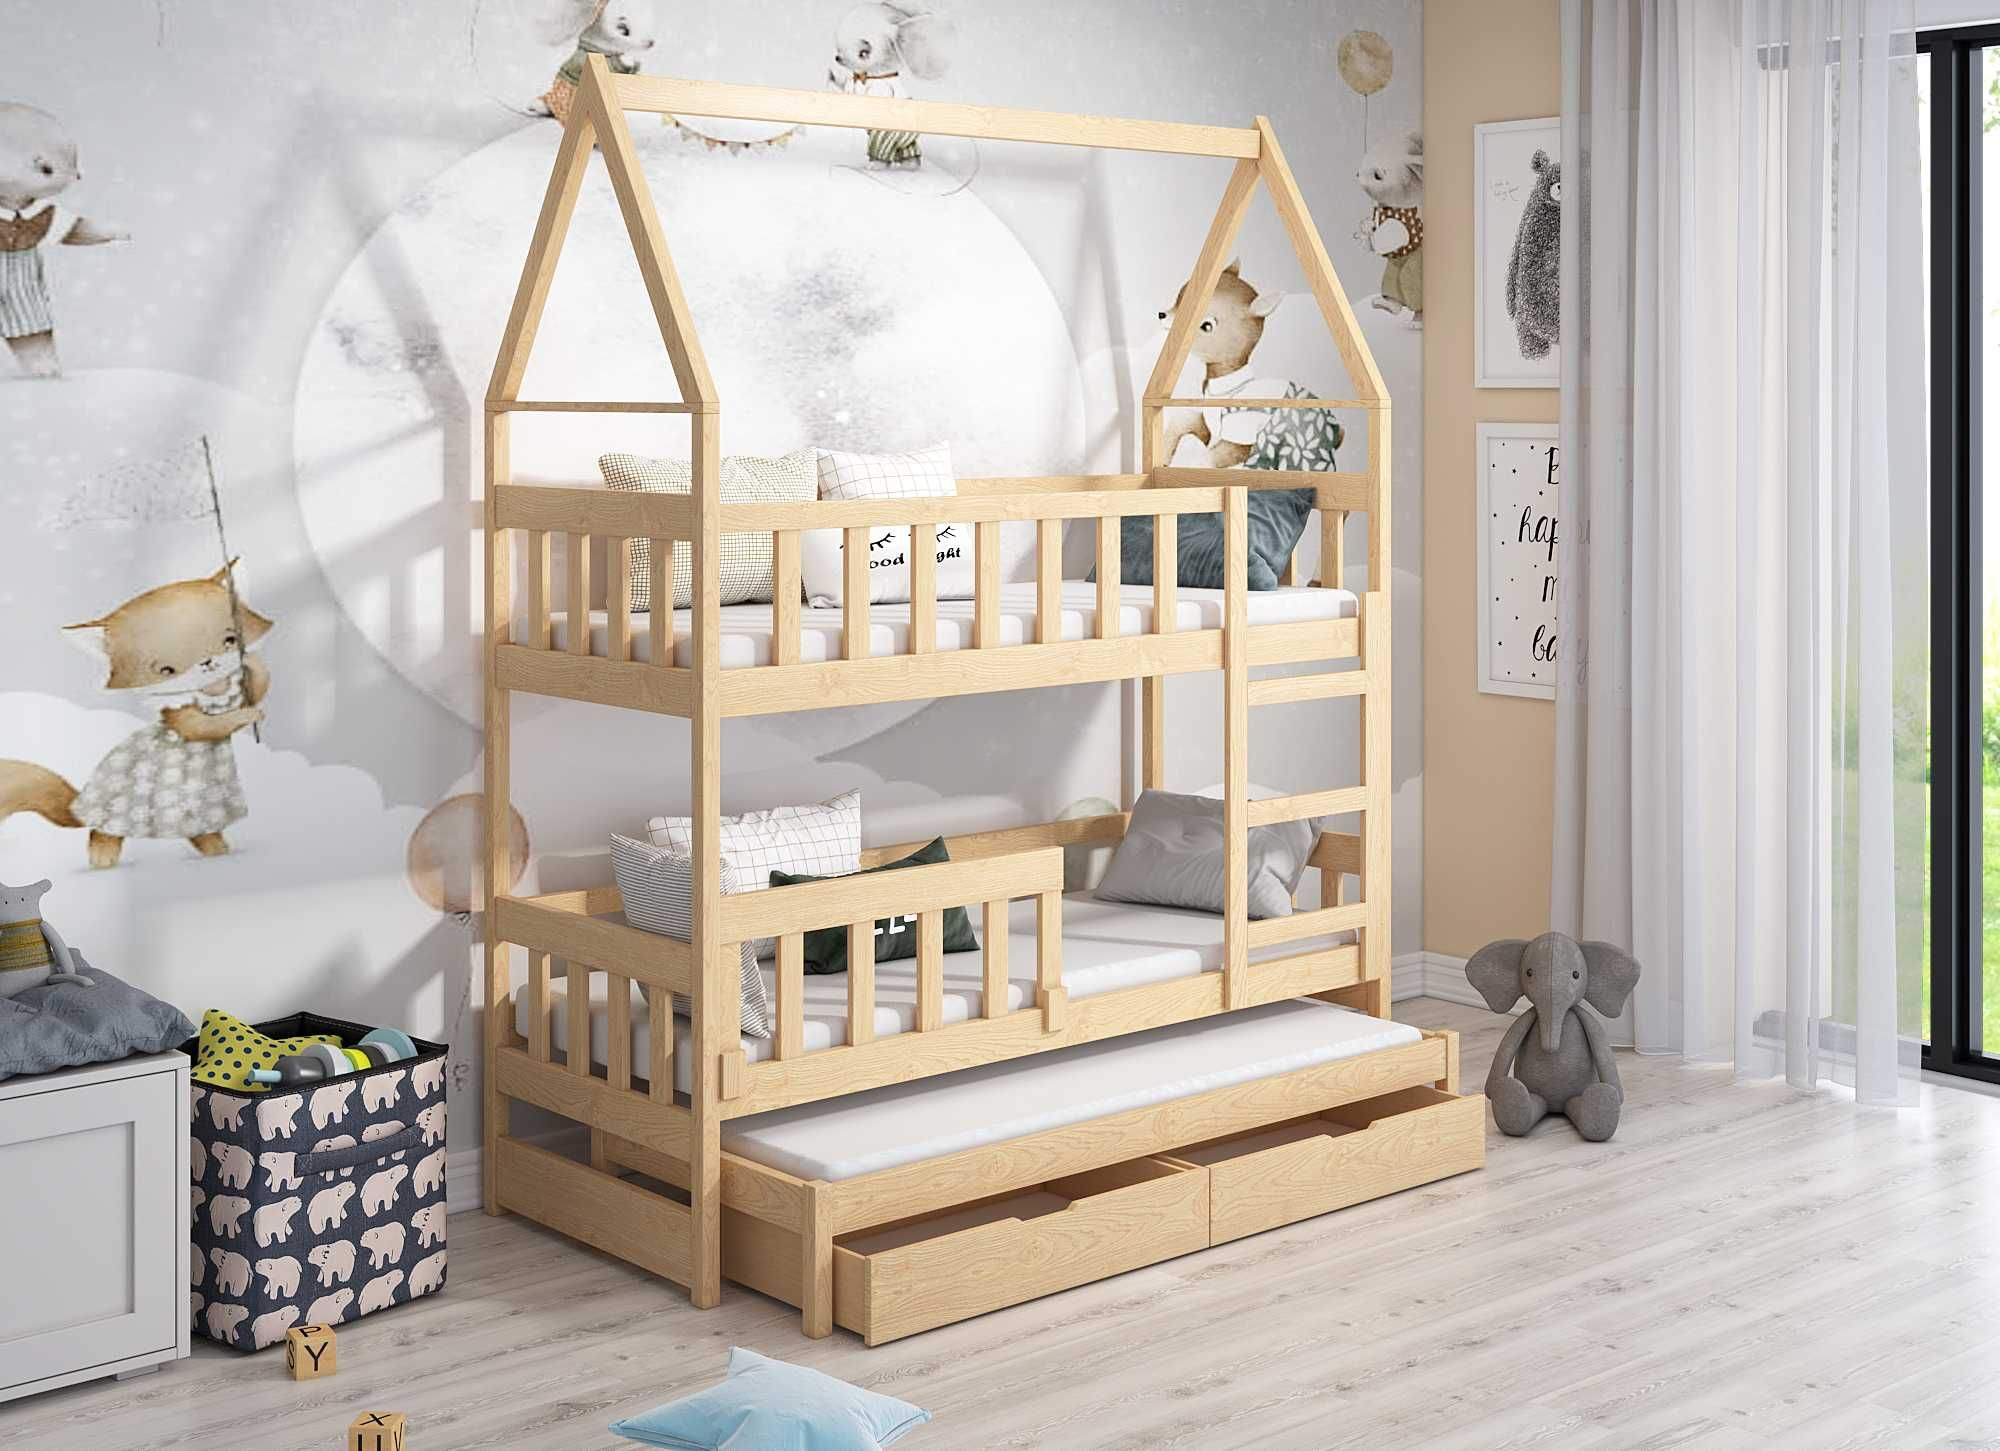 Łóżko piętrowe DOMEK 3 osobowe dziecięce - materace 160x75 / 180x75